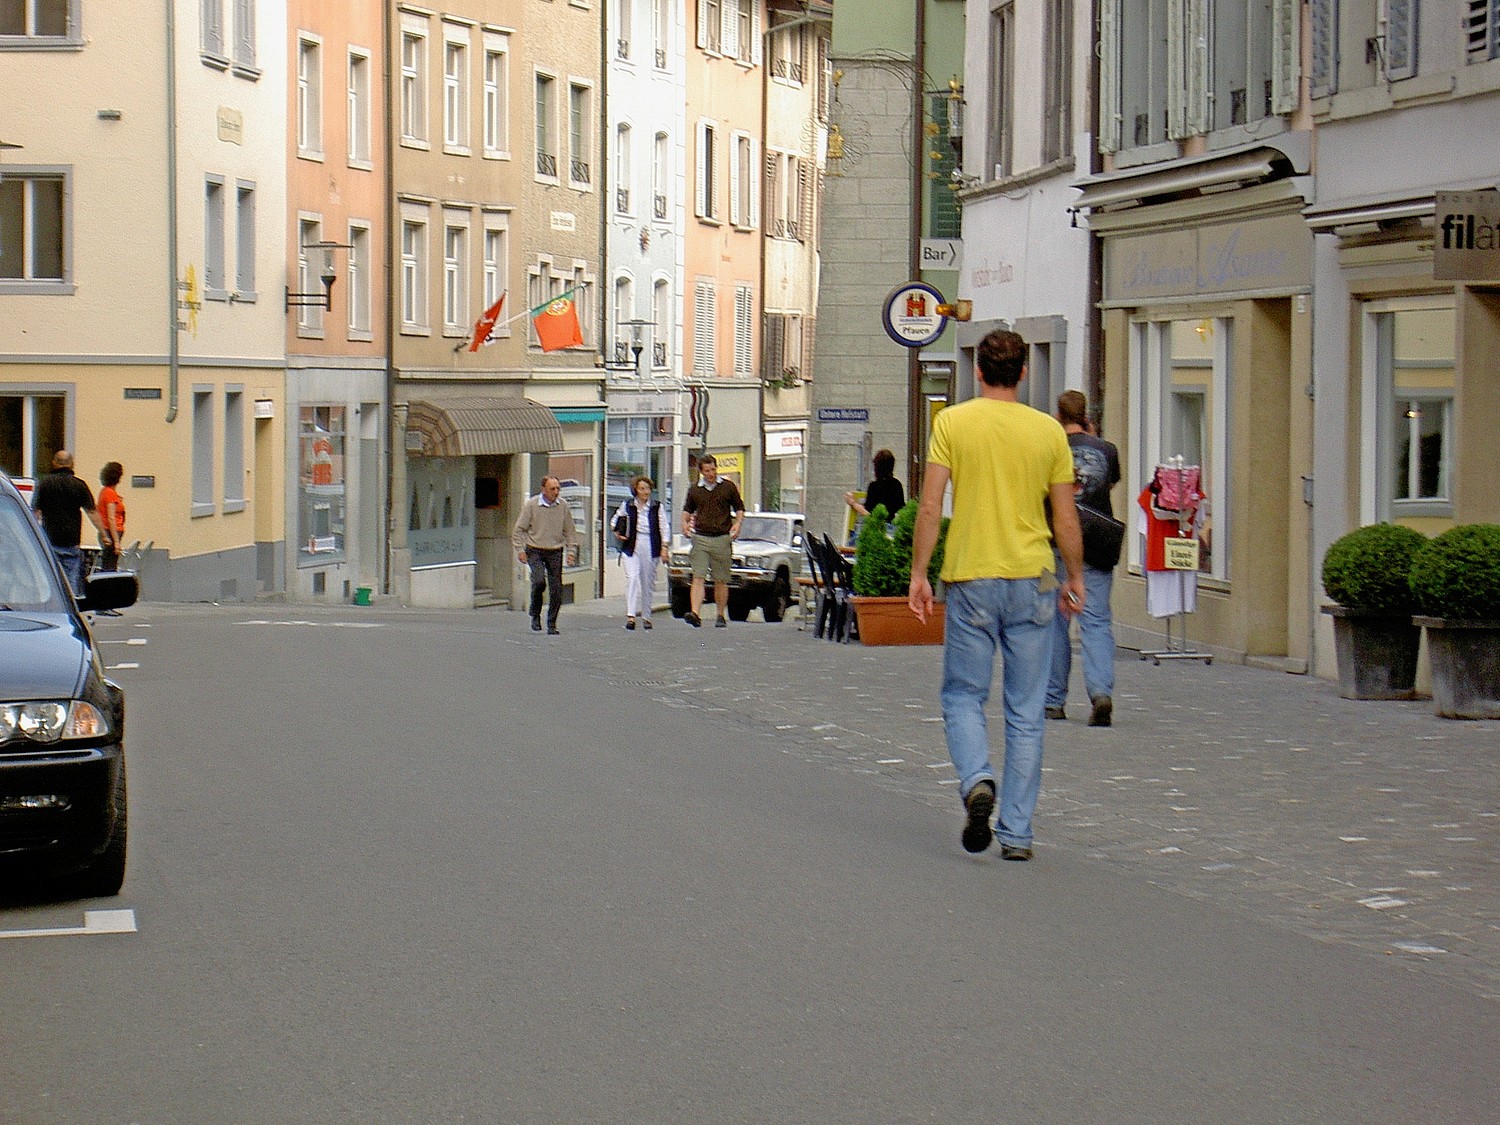 Blick in die Altstadt von Brugg, eine Begegnungszone. Autos sind erlaubt, aber auch Menschen zu Fuss haben Platz.